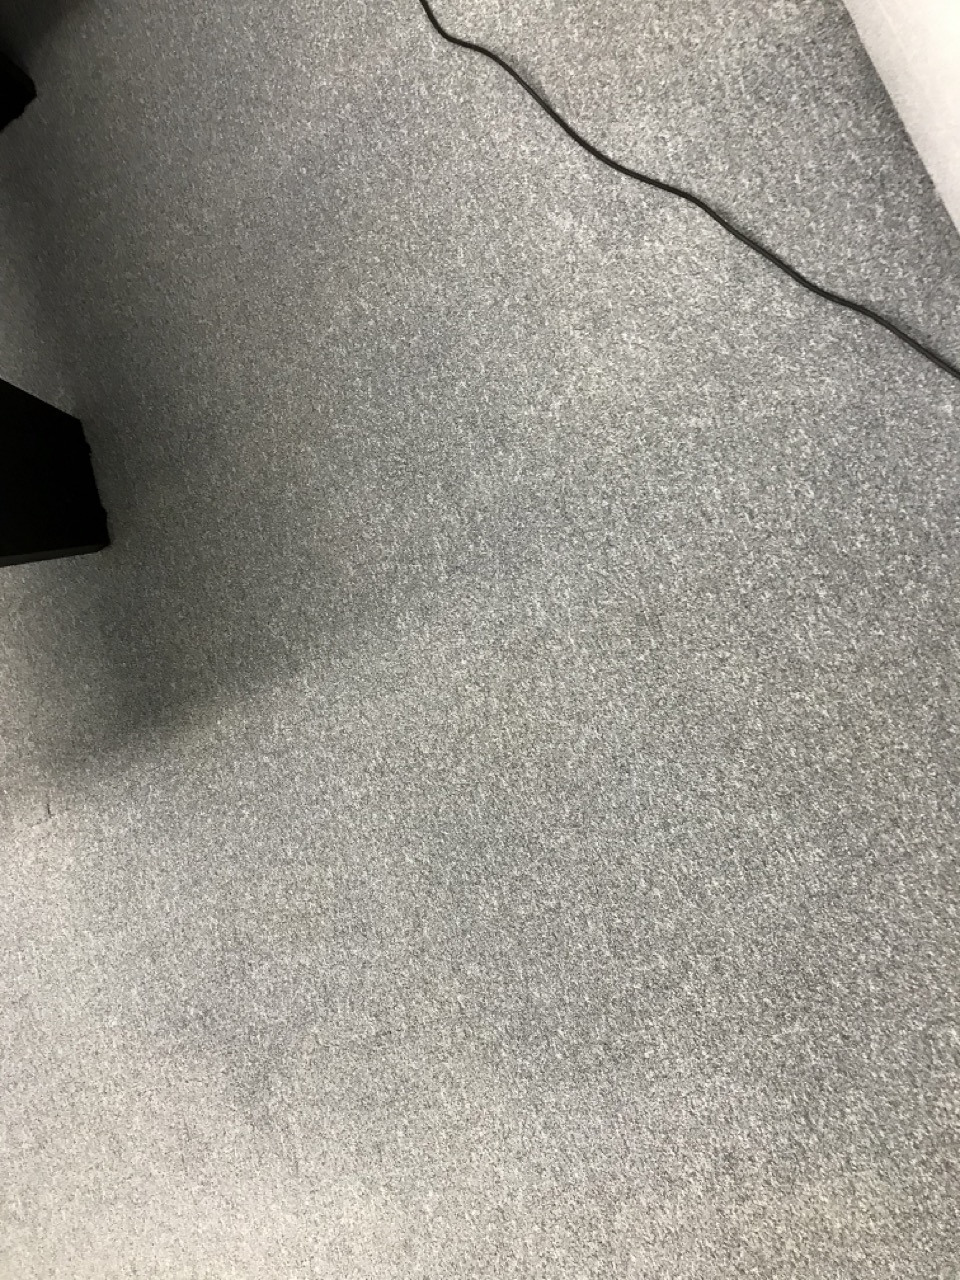 чистка офісного ковроліну